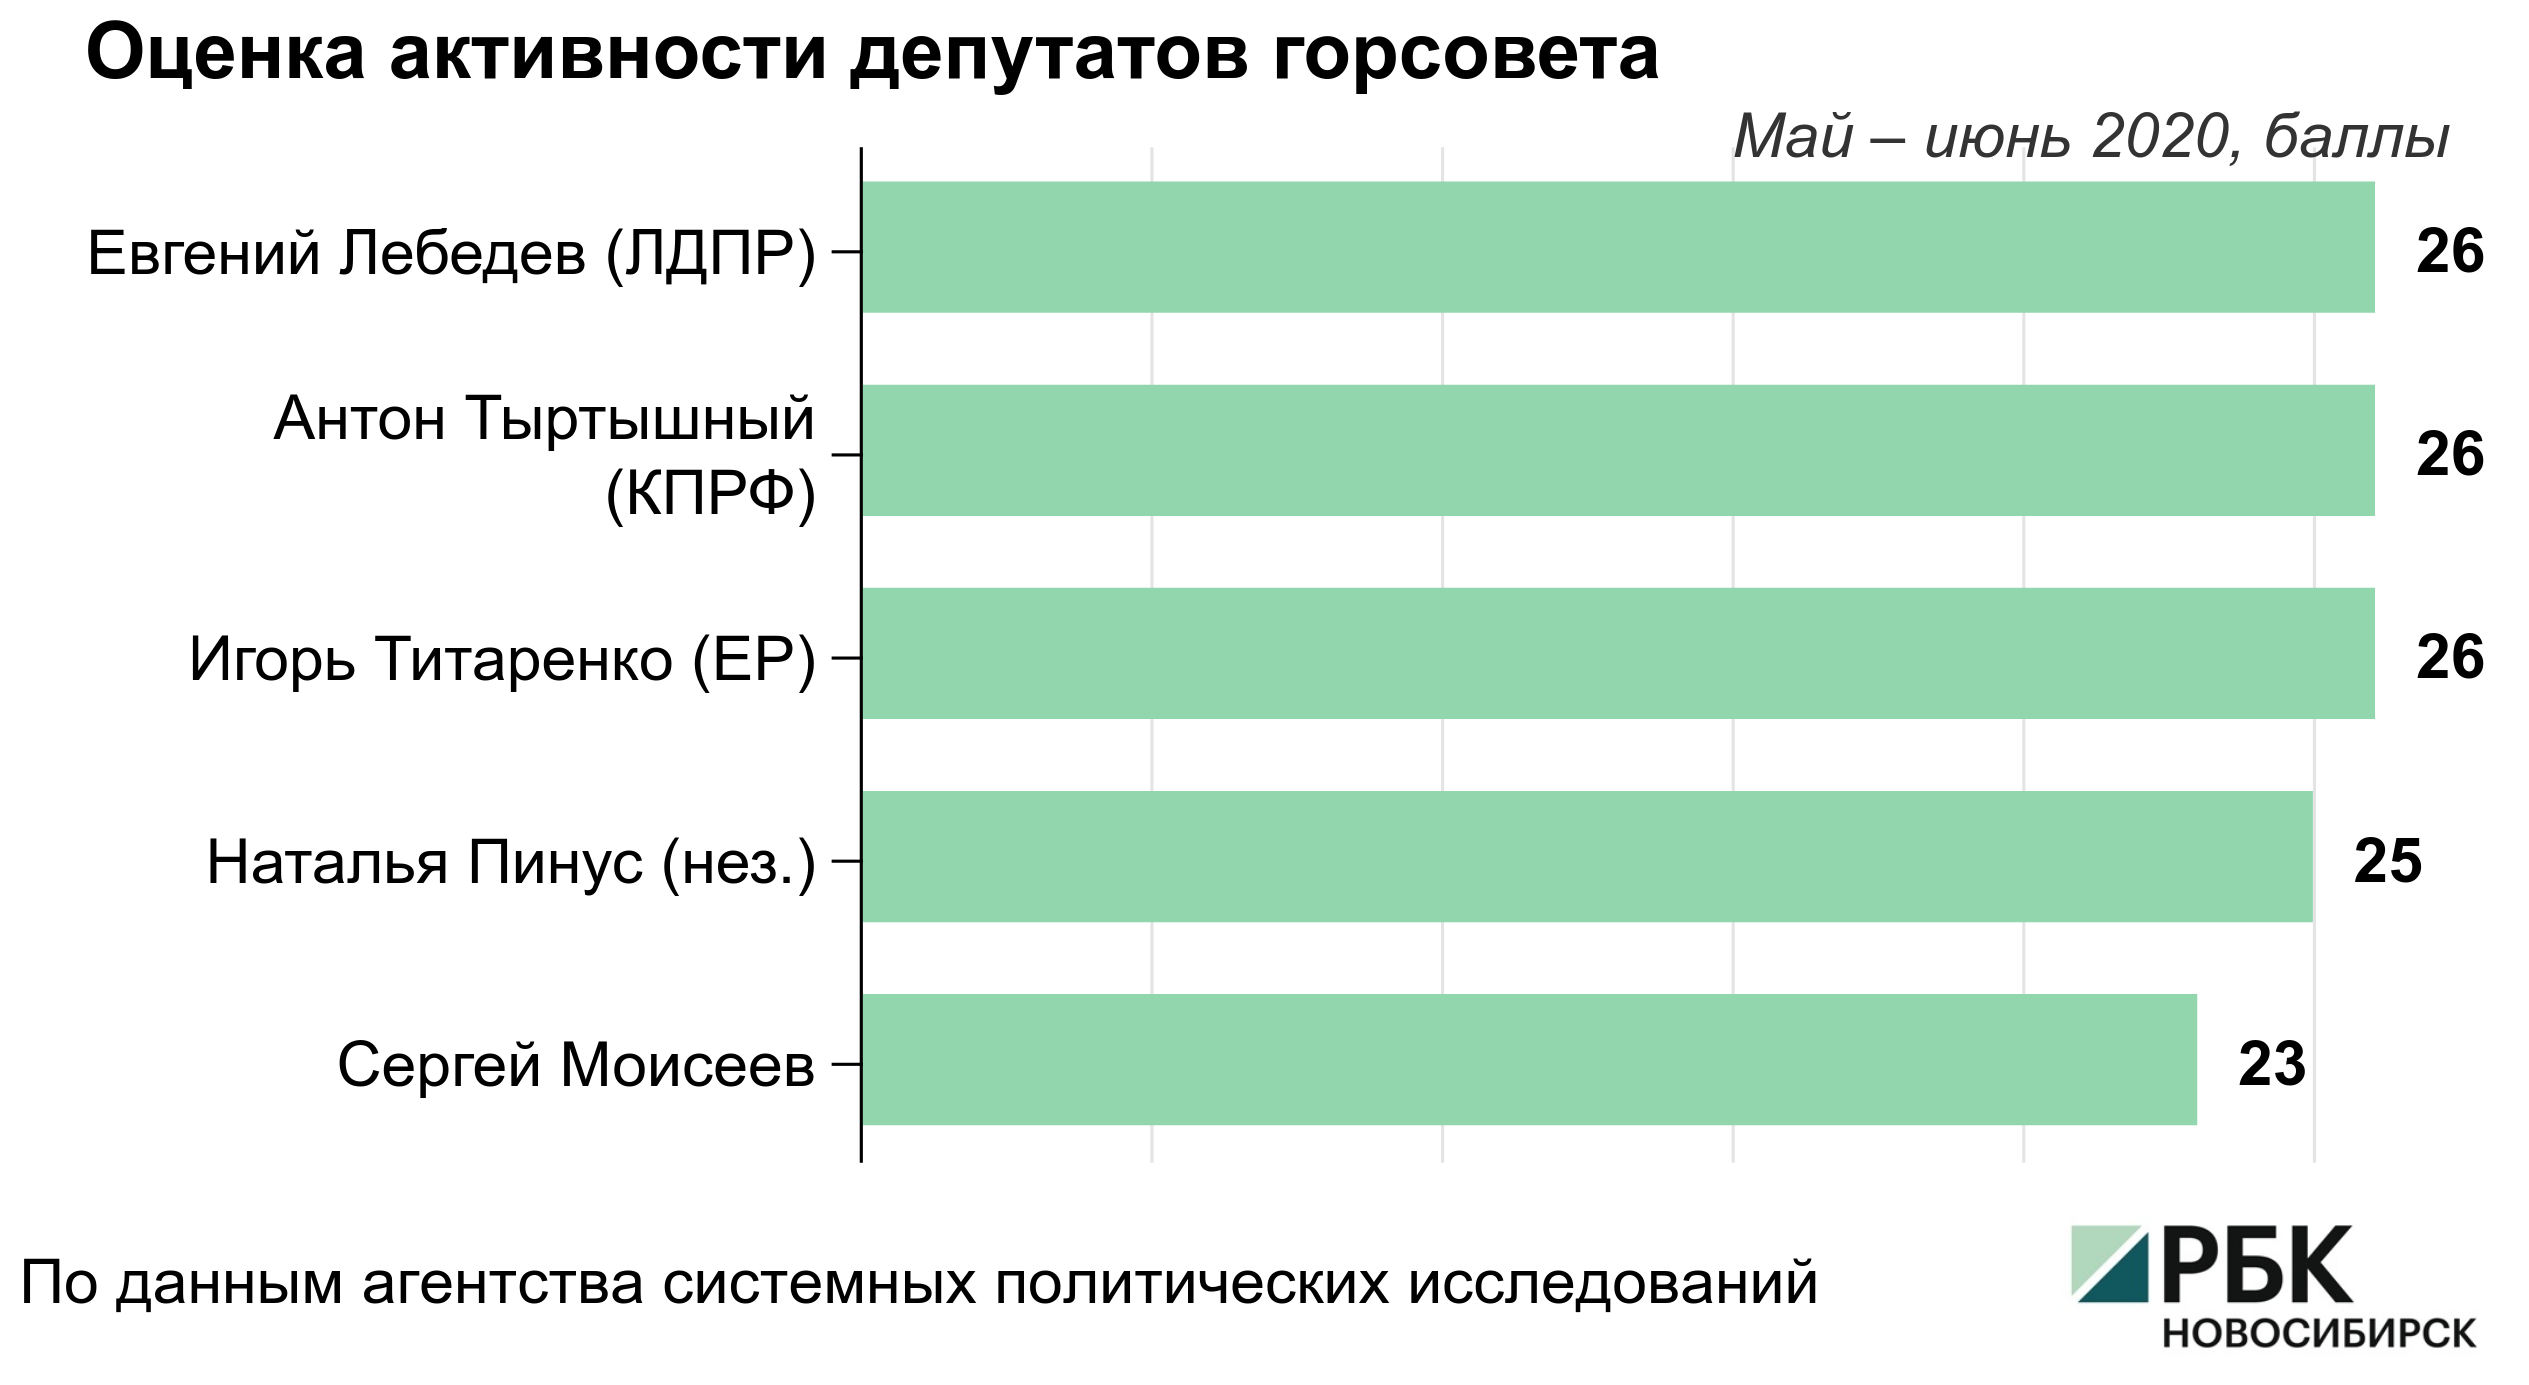 Аналитики оценили активность новосибирских депутатов в соцсетях